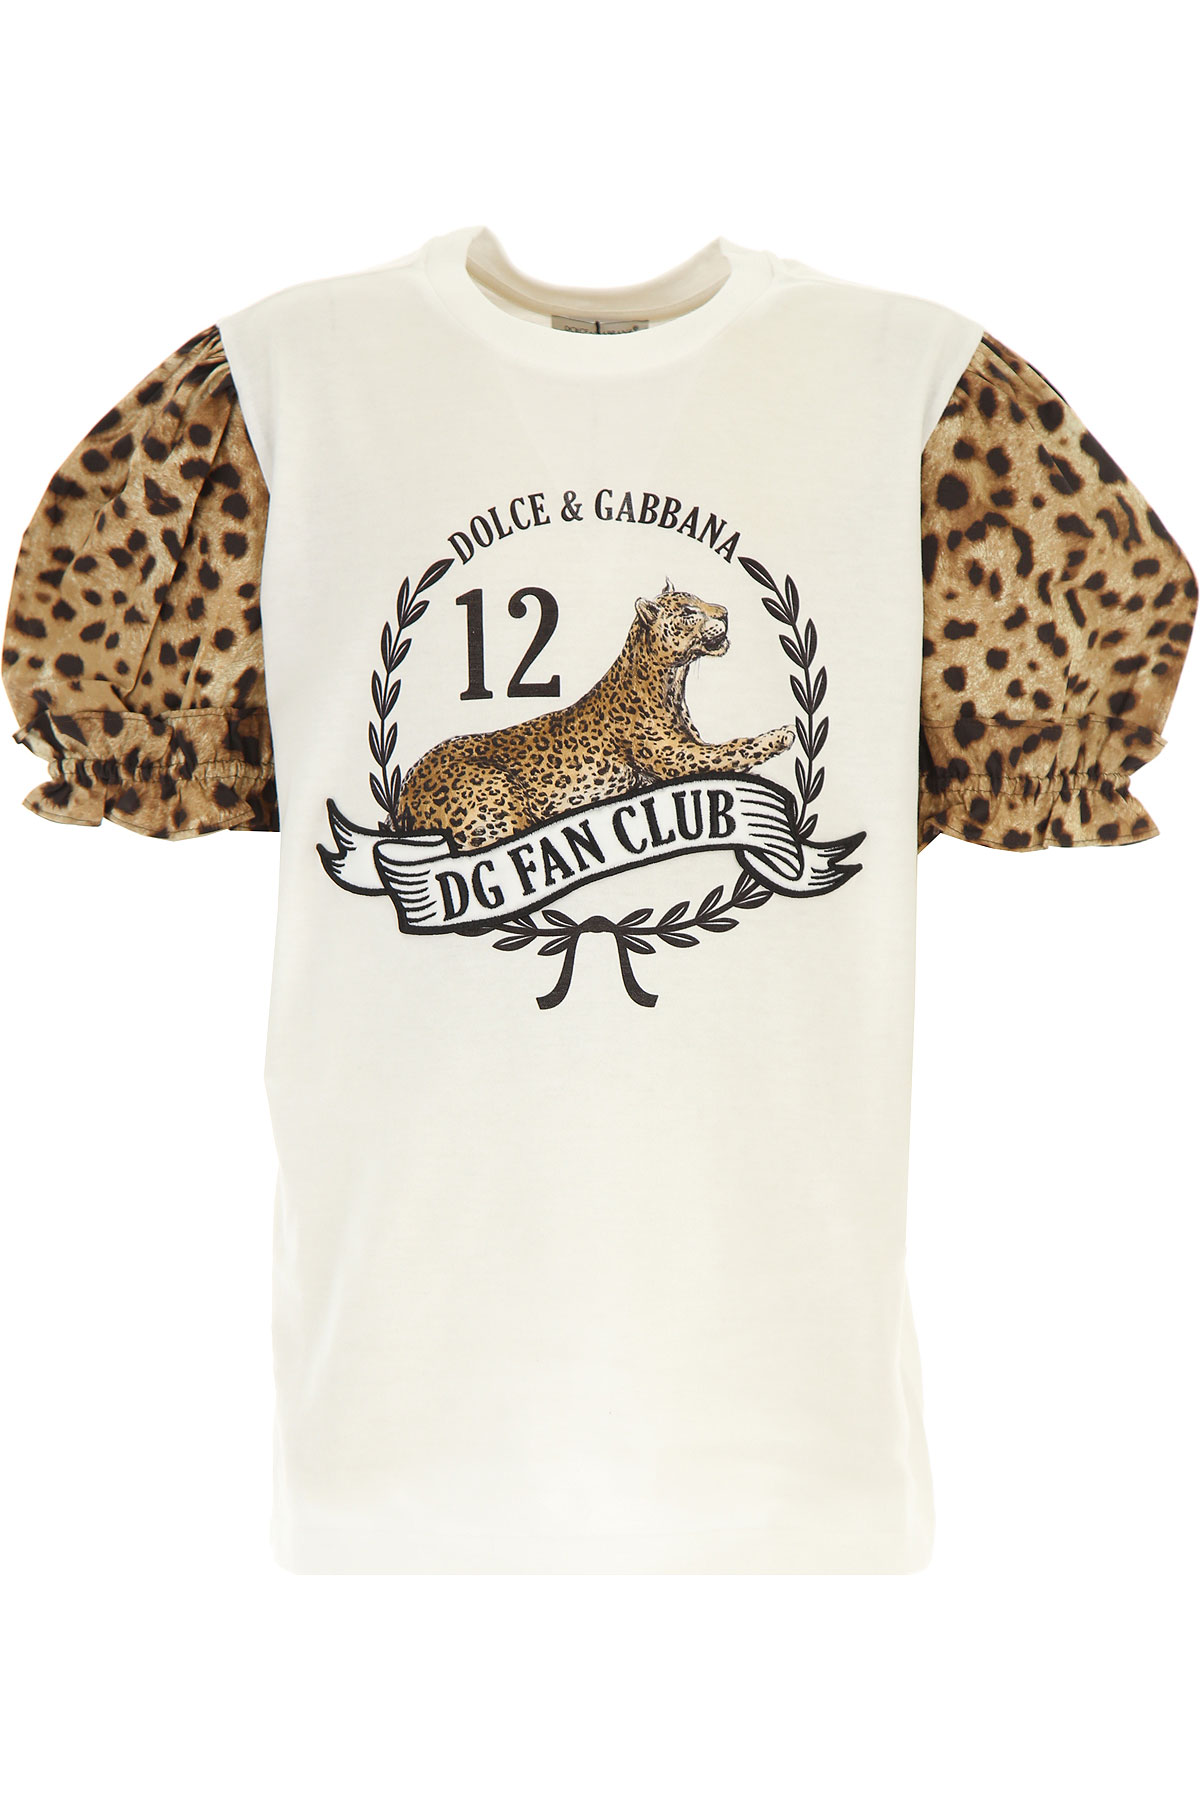 Dolce & Gabbana Kinder T-Shirt für Mädchen Günstig im Sale, Weiss, Baumwolle, 2017, 10Y 12Y 6Y 8Y